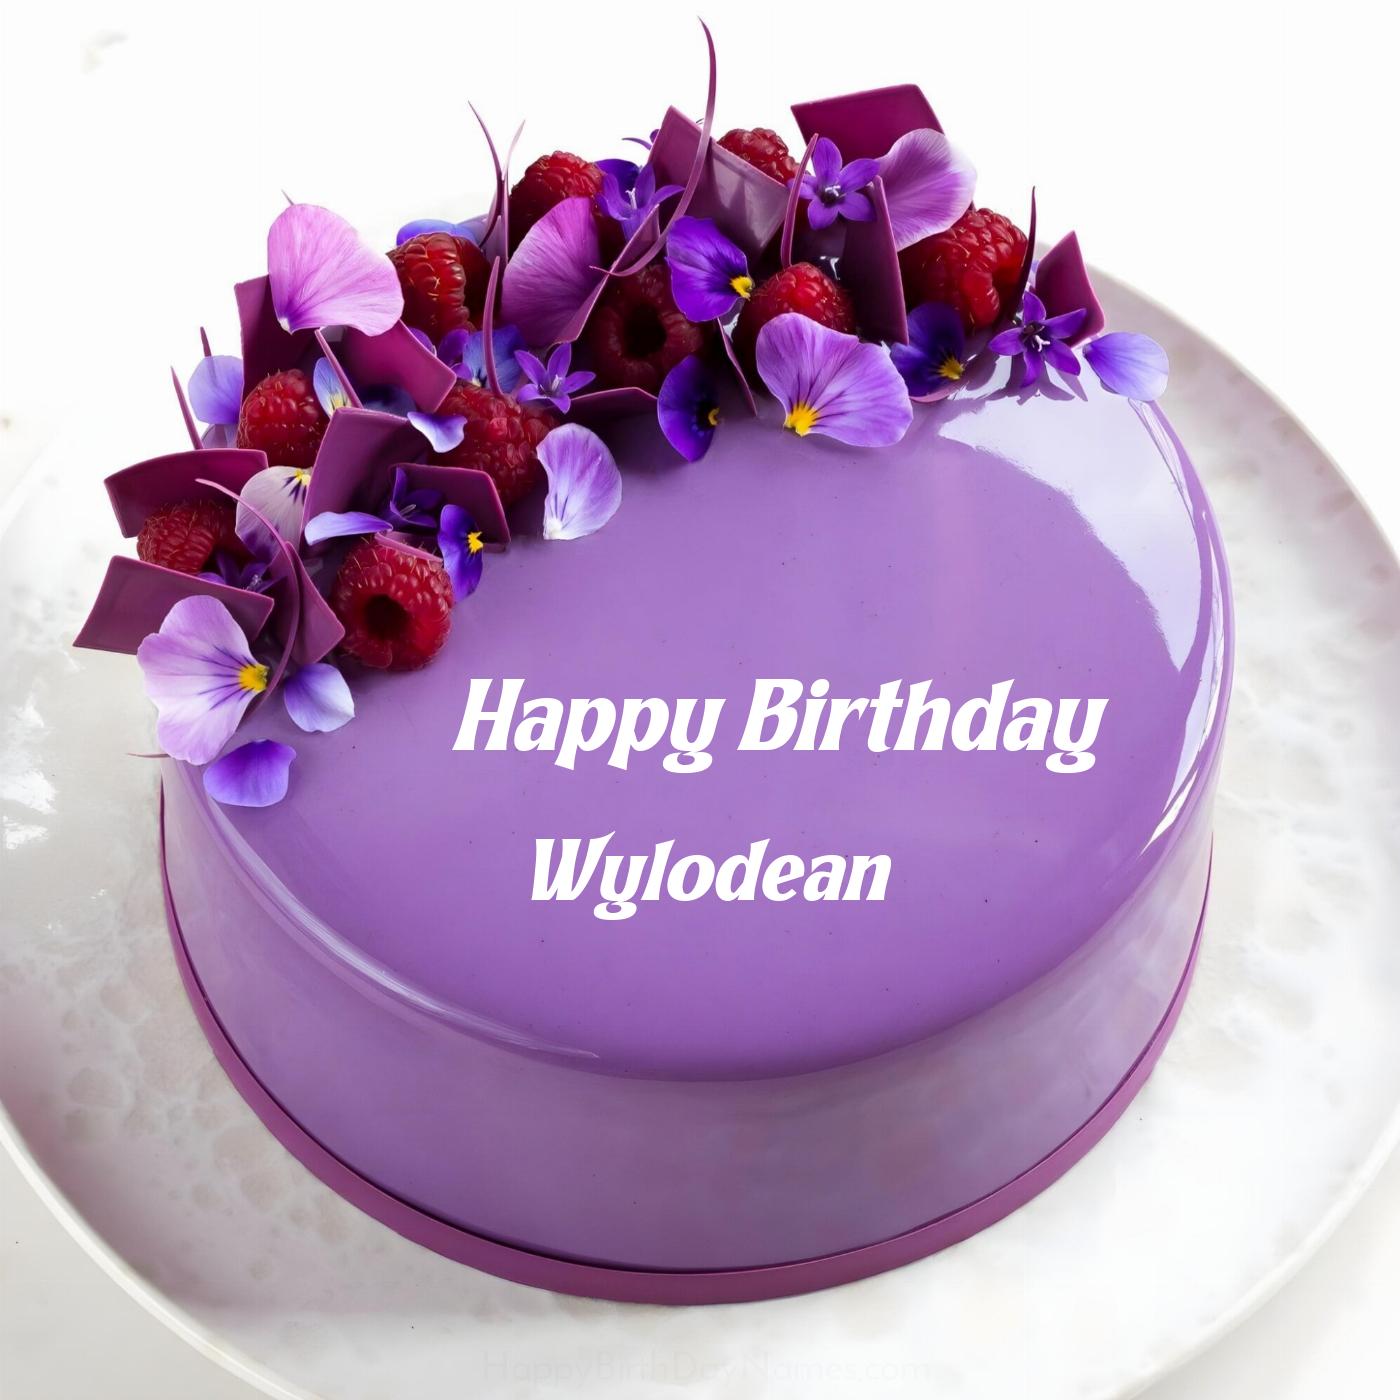 Happy Birthday Wylodean Violet Raspberry Cake